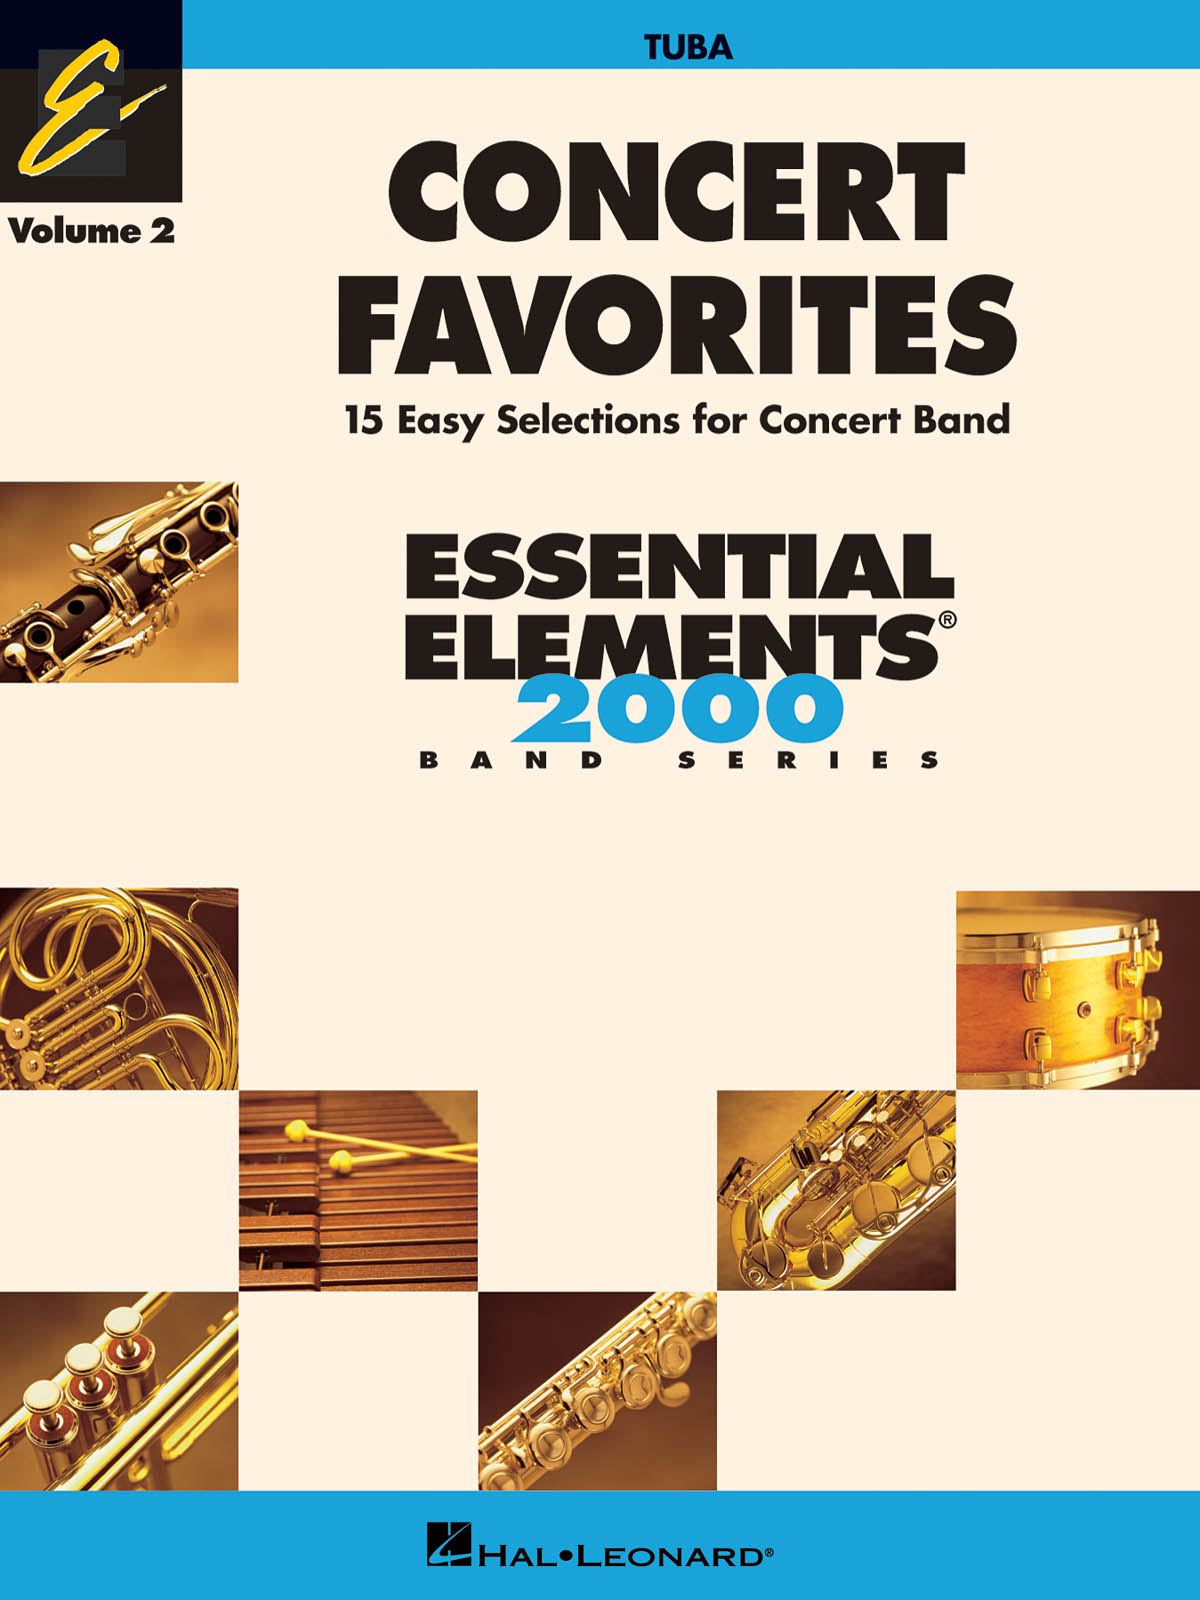 Sonny Burnette: Seven Southern Sketches: Flute Ensemble: Score & Parts